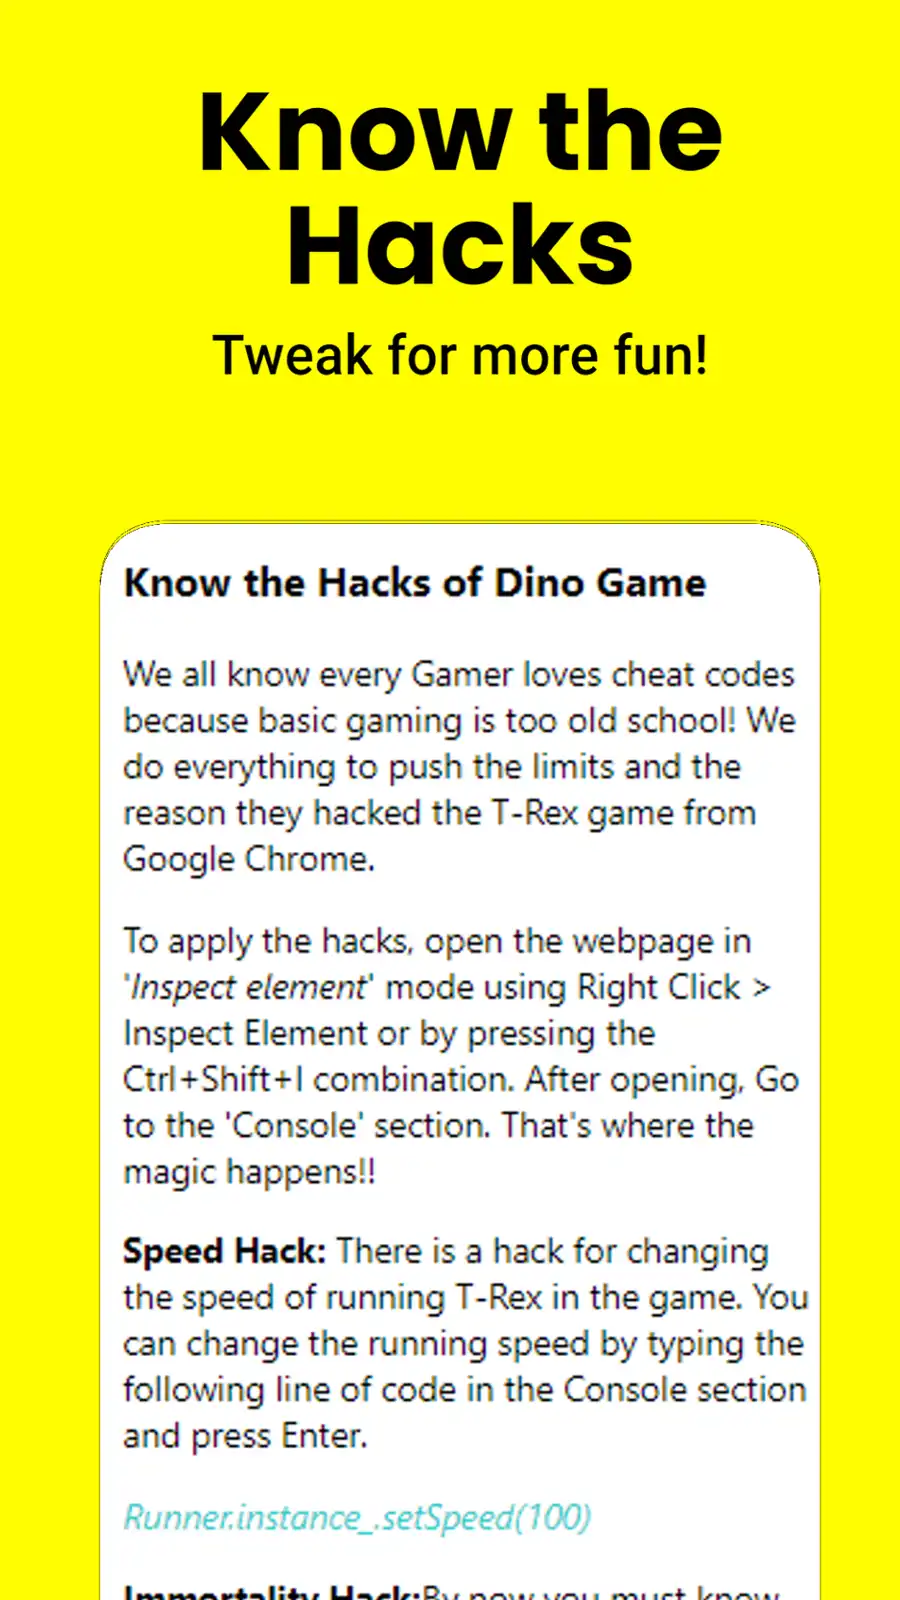 Загрузите веб-инструмент или веб-приложение Google Dino Game